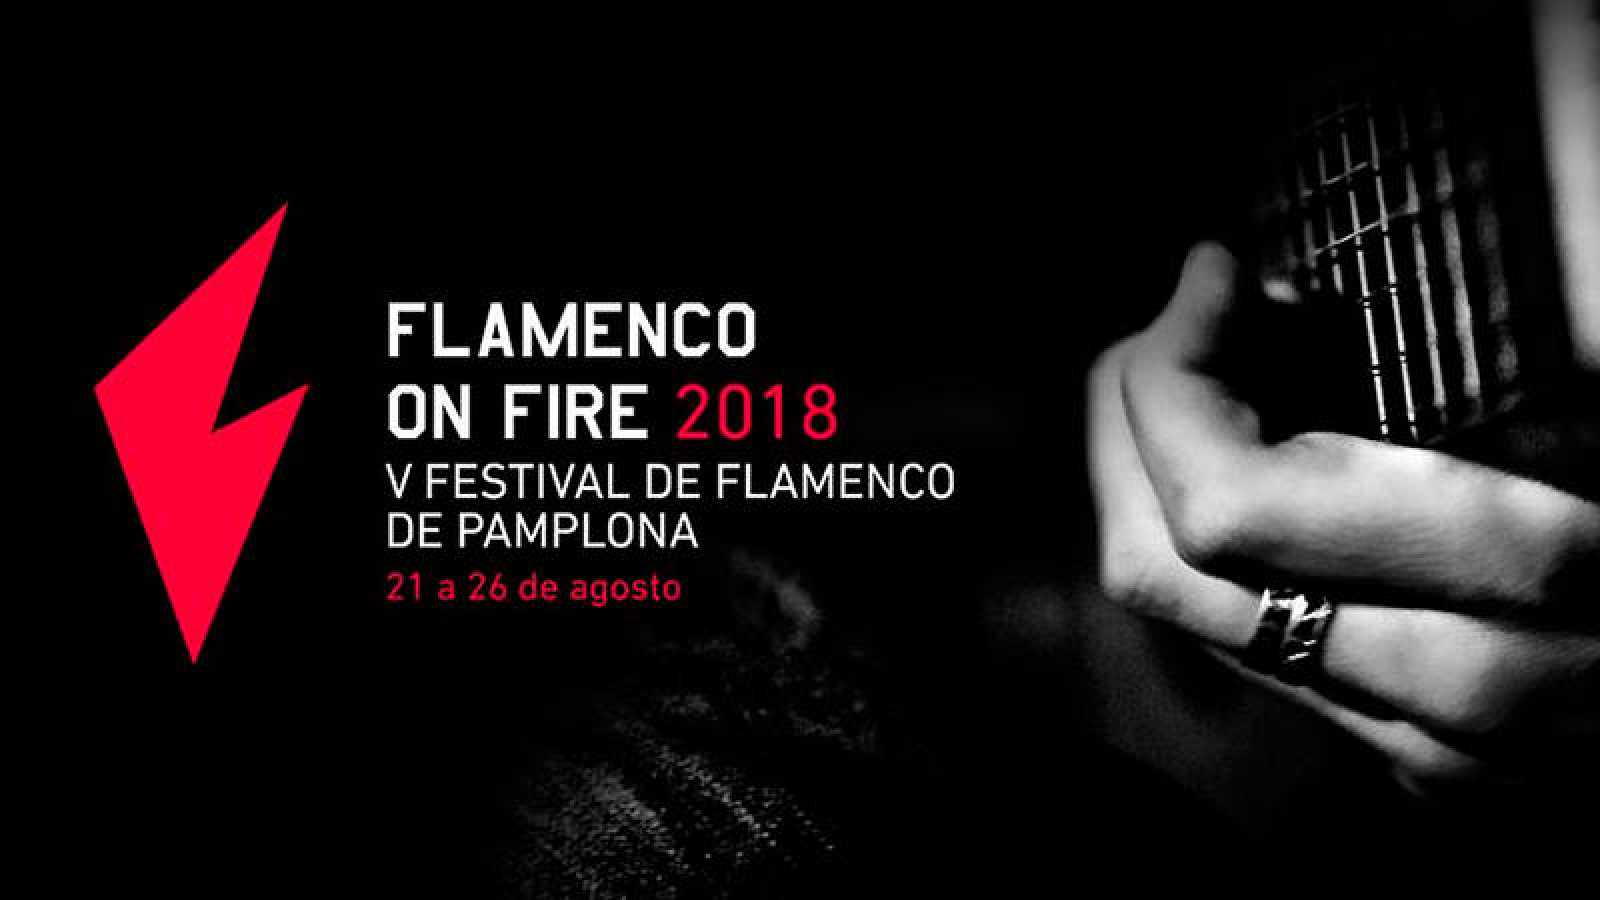 Resultado de imagen de logo flamenco on fire 2018